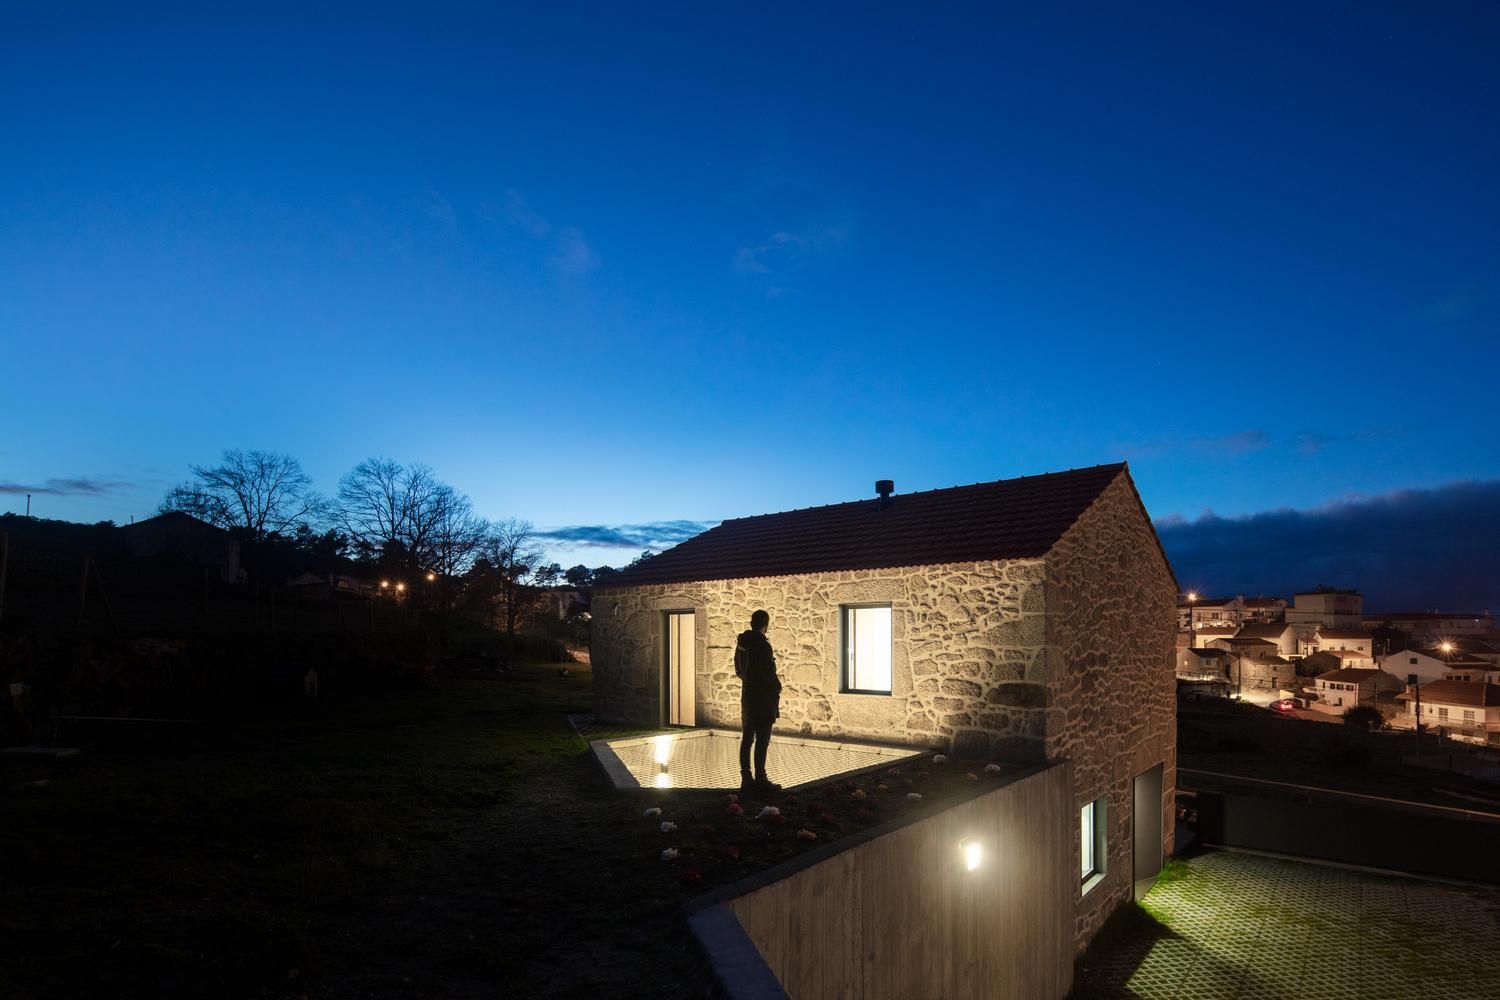 Заради безпеки: в Португалії побудували житло з рибальською сіткою над подвір'ям – фото